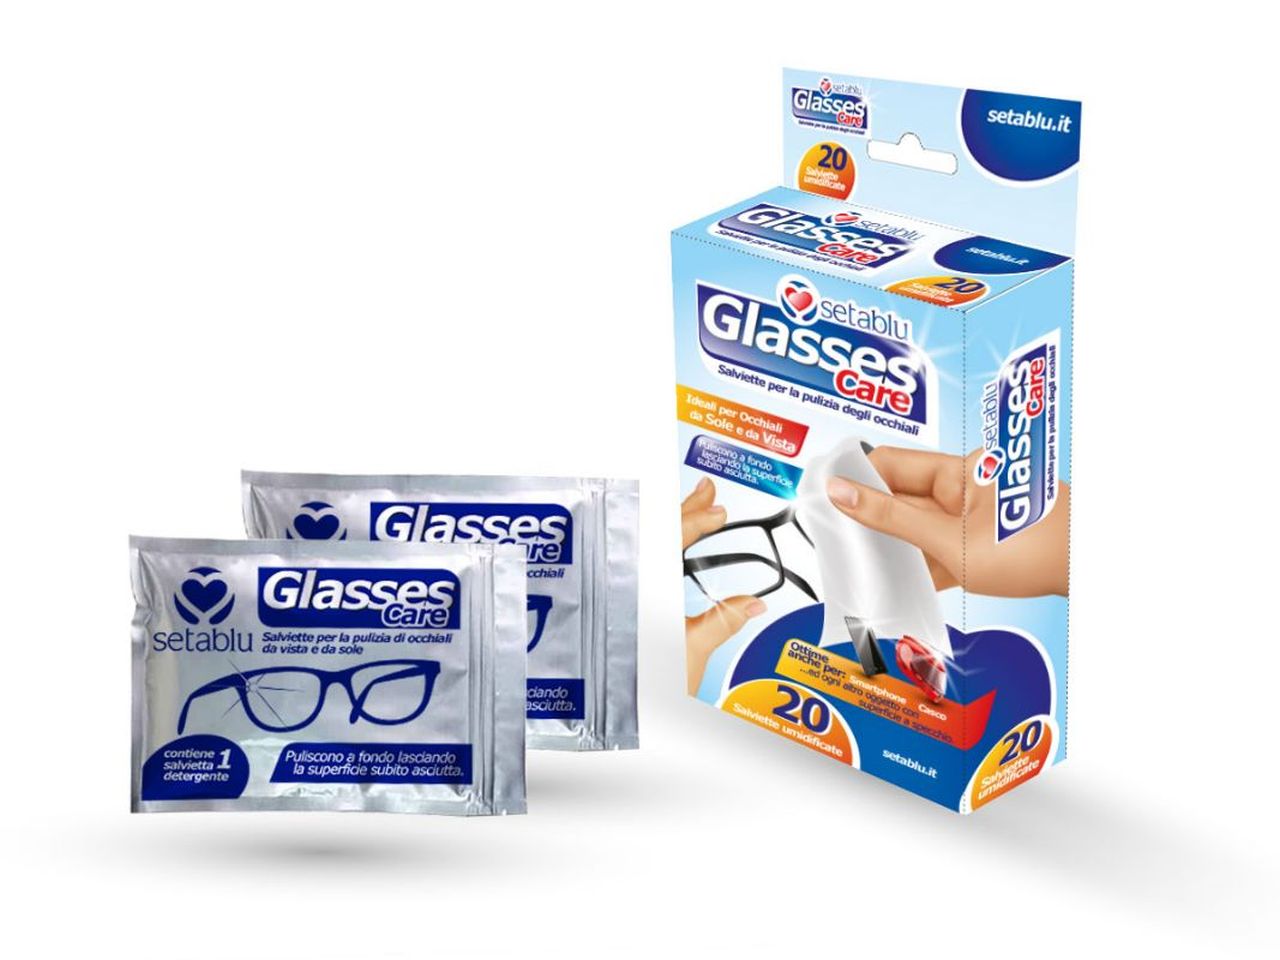 Salviette pulizia occhiali - la confezione contiene 20 salviettine